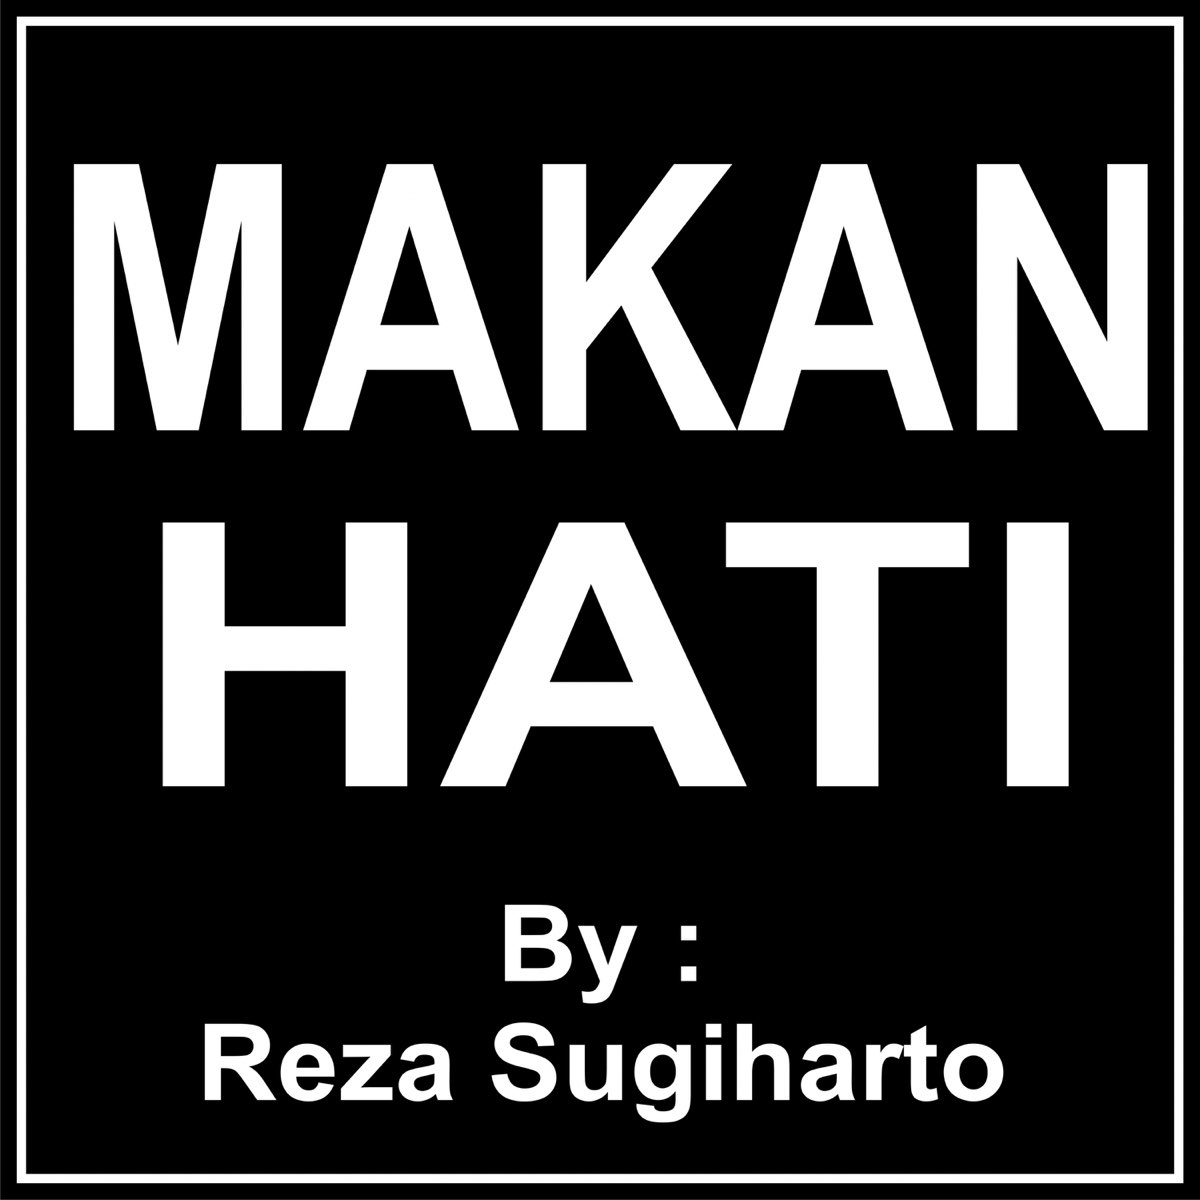 Makan Hati - Single by Reza Sugiarto on Apple Music